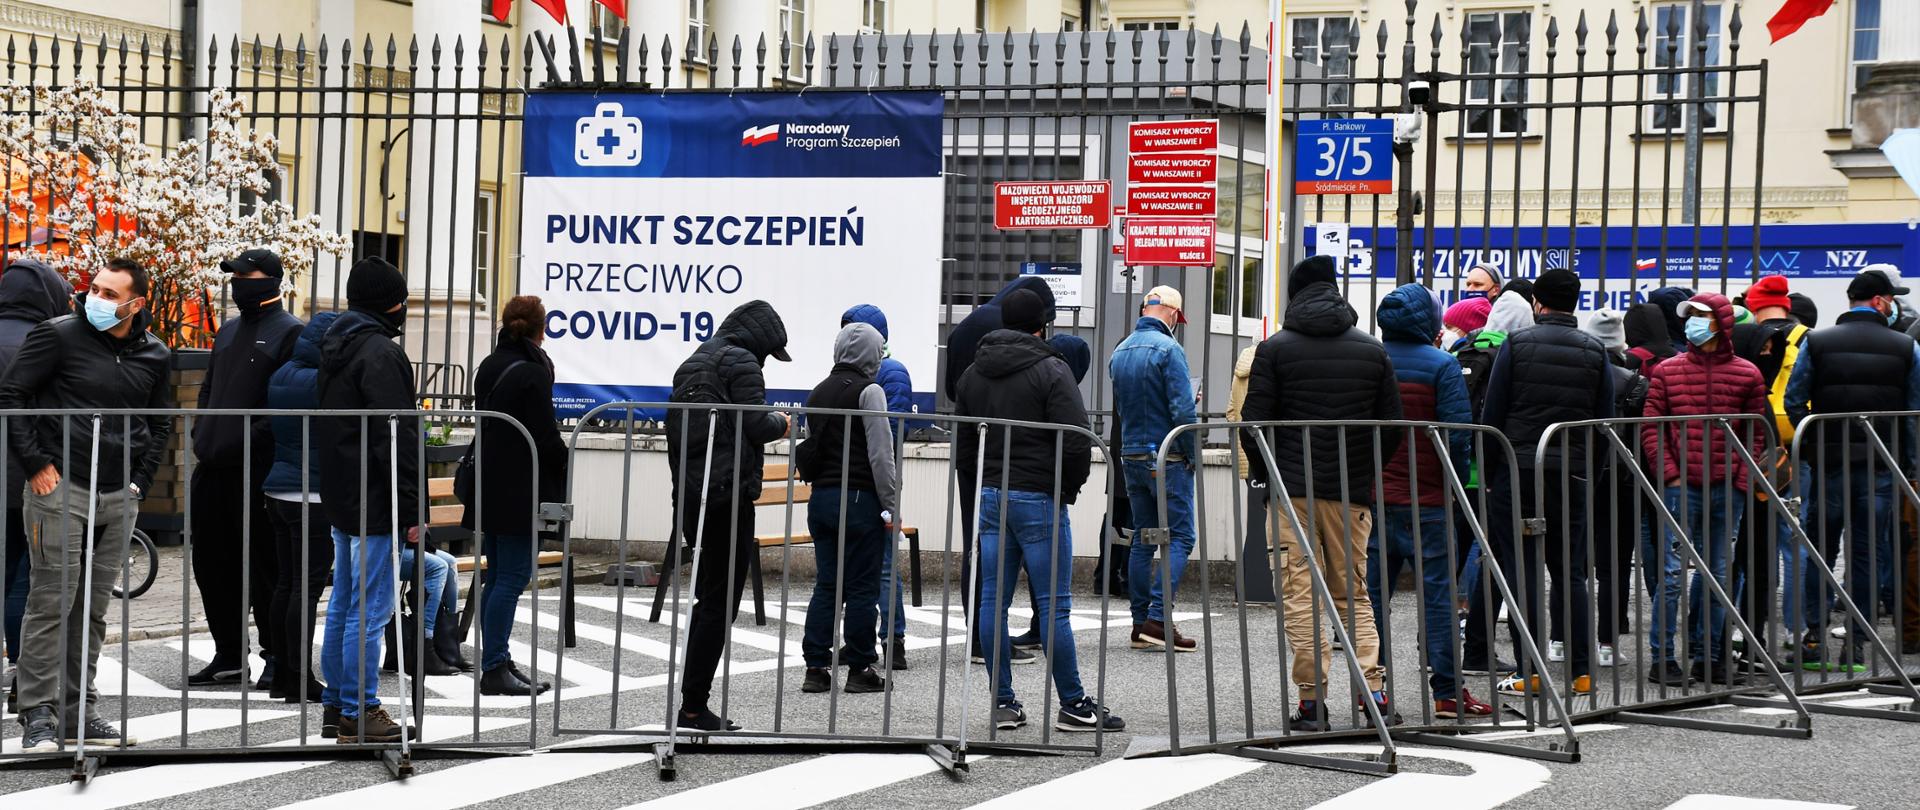 Zdjęcie przedstawia kolejkę ludzi oczekujących na szczepienie w punkcie szczepień, zlokalizowanym na dziedzińcu Mazowieckiego Urzędu Wojewódzkiego w Warszawie